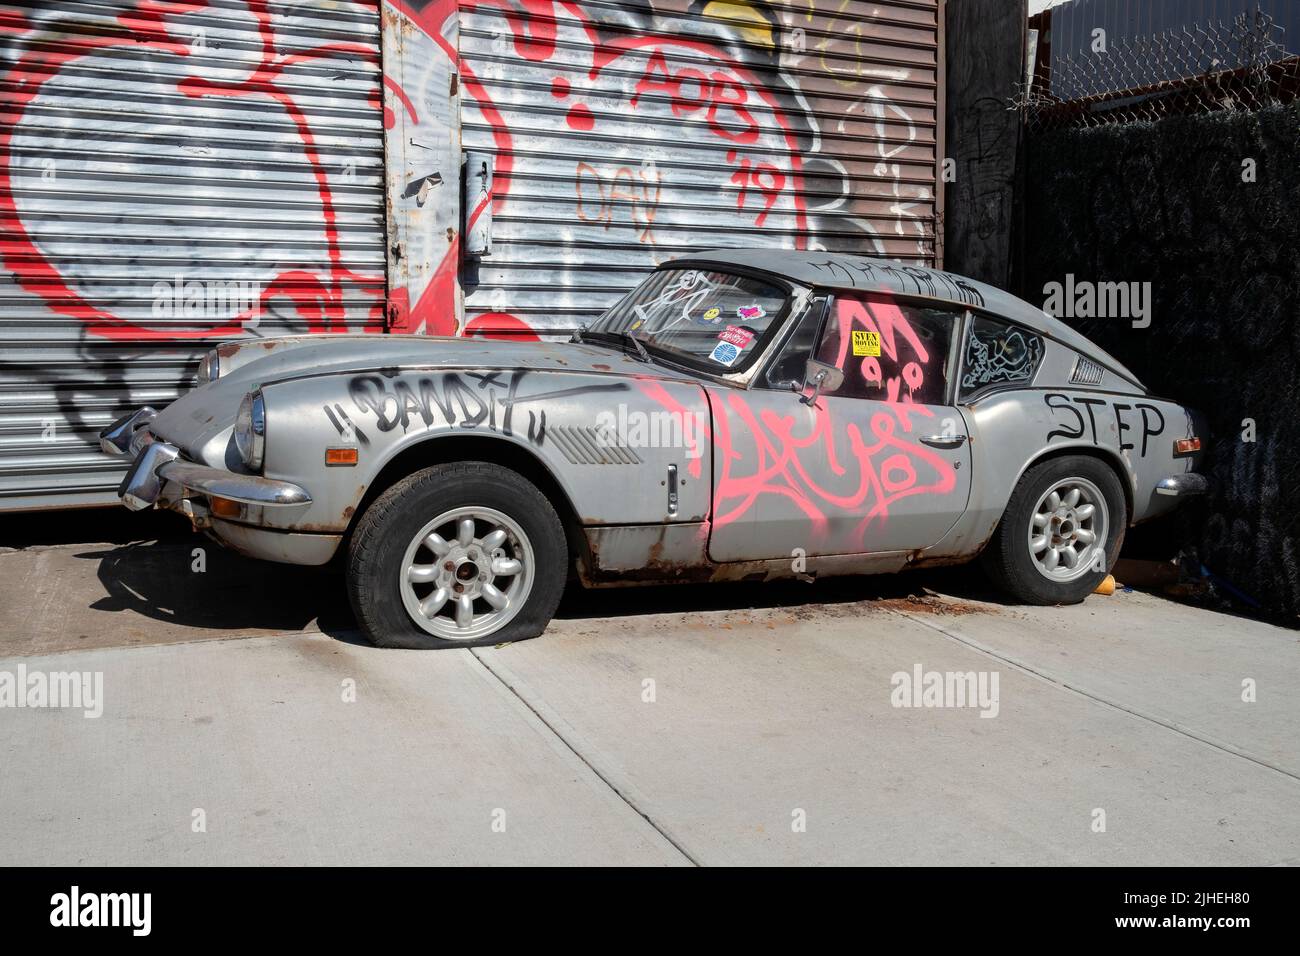 STADTLANDSCHAFT. Eine graffierte und reckte Jaguar Limousine in der Roebling Street in Williamsburg, Brooklyn, New York. Stockfoto